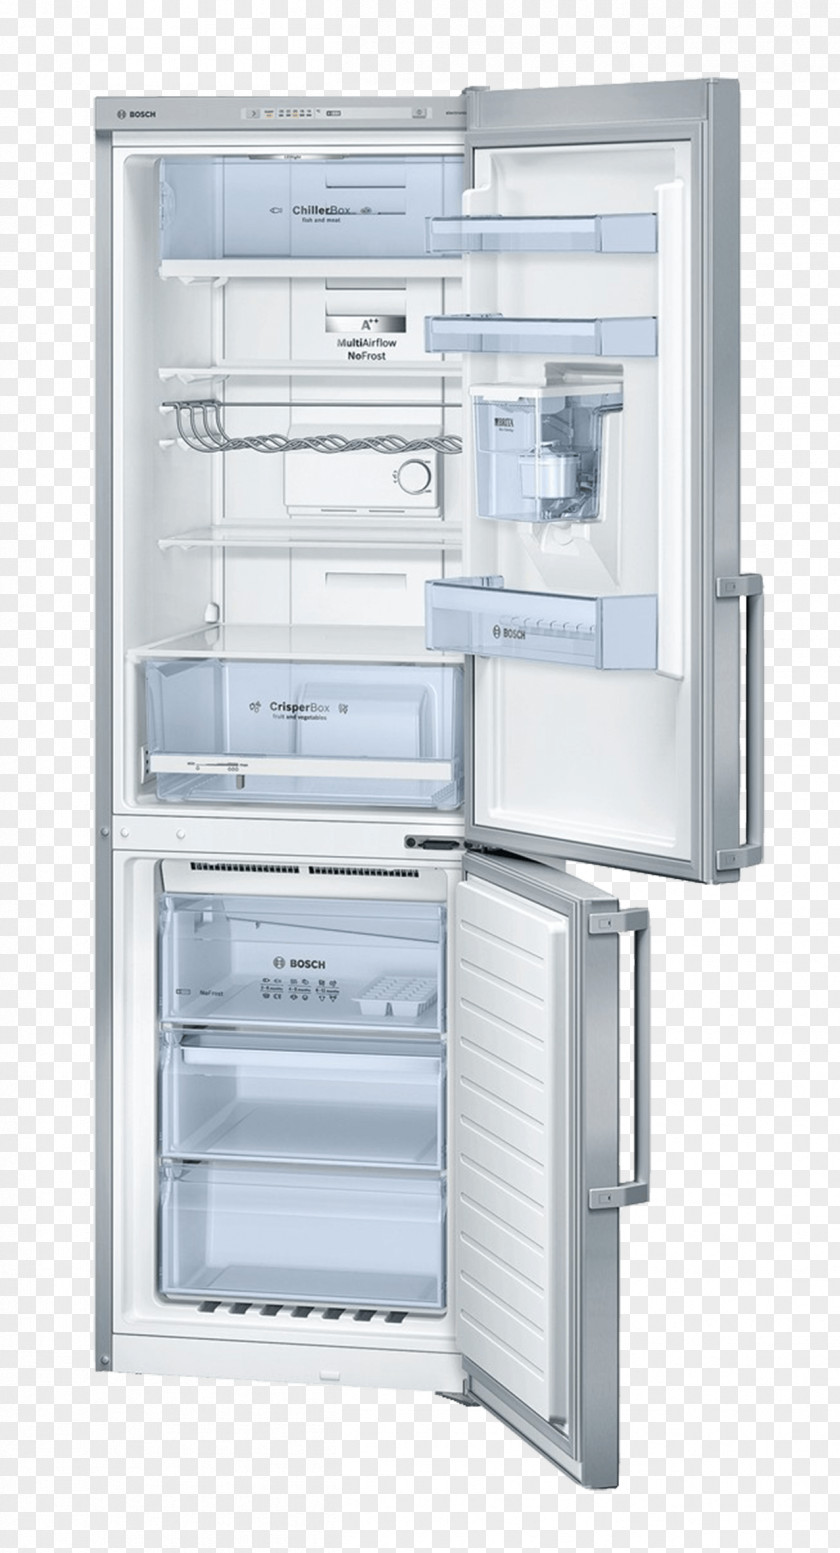 Fridge Refrigerator Home Appliance Freezers Auto-defrost Robert Bosch GmbH PNG